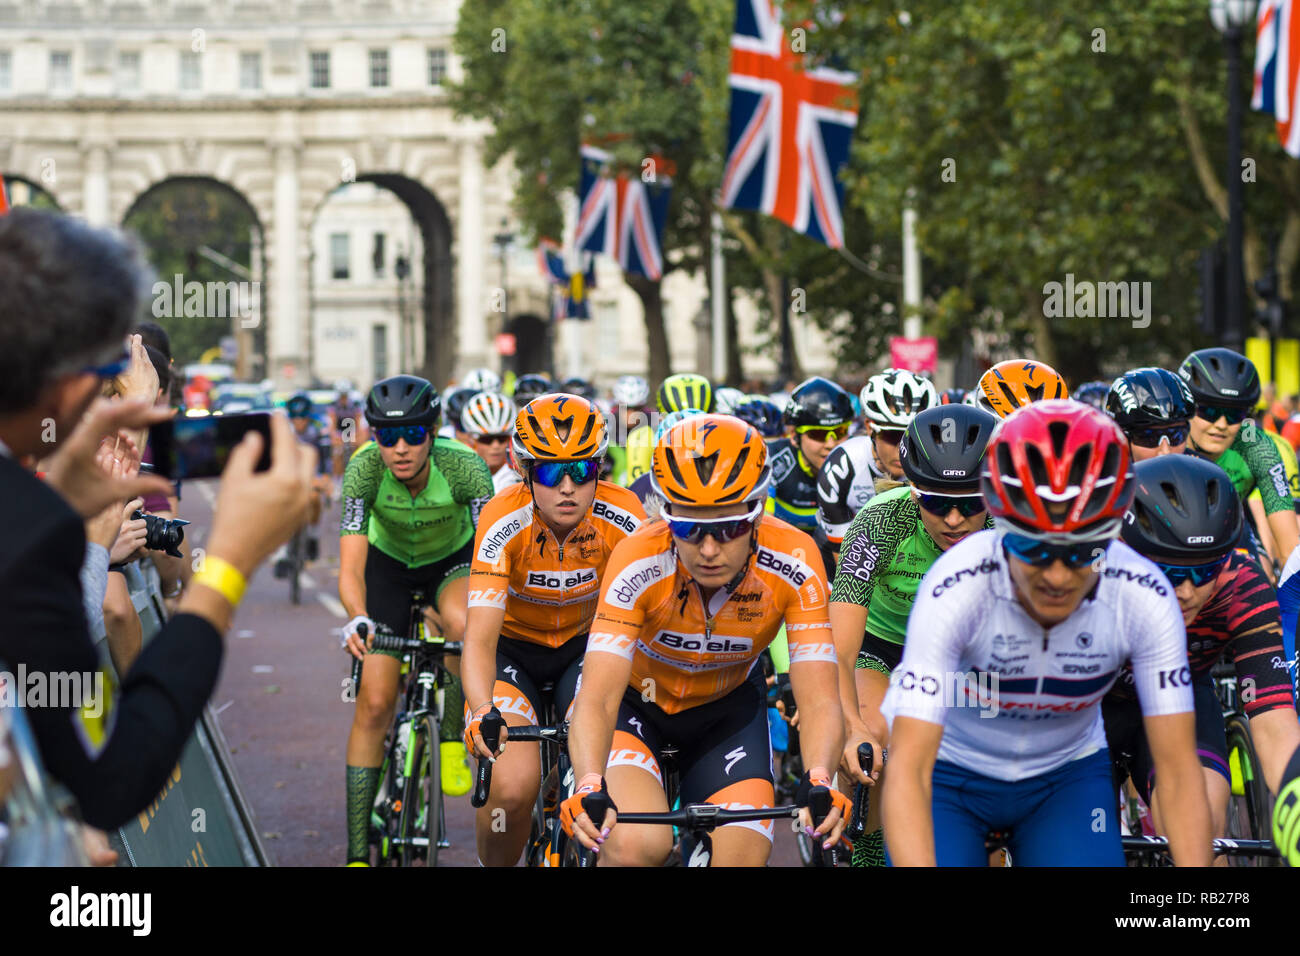 Radfahrer in der aufsichtsrechtlichen RideLondon 2018 Rennen Radfahren in der Mall vor dem Start des Rennens, London, UK Stockfoto